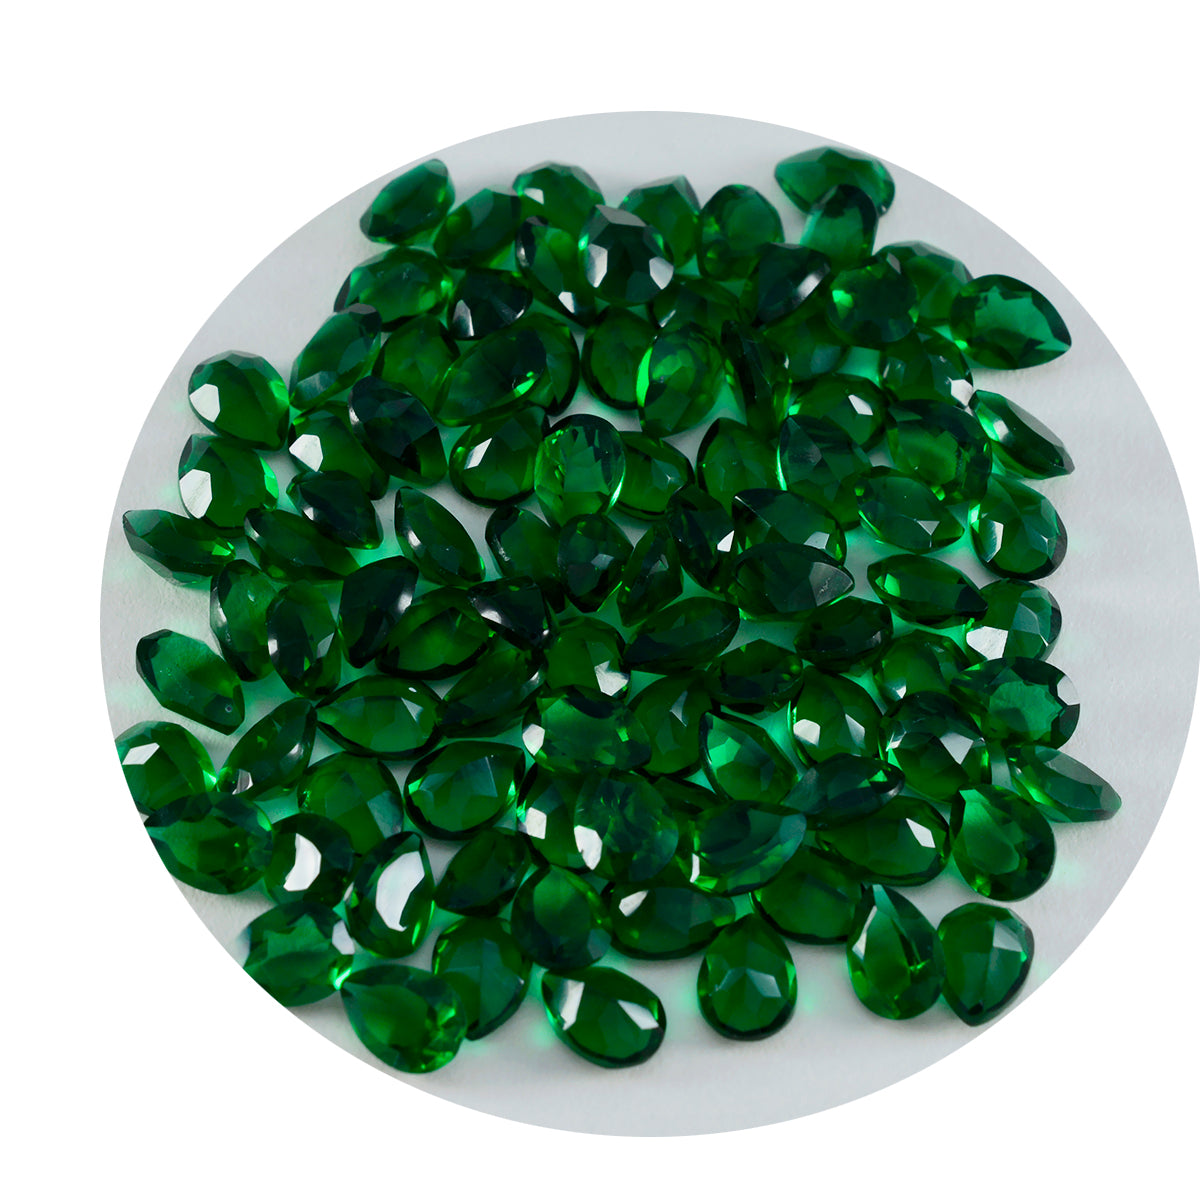 Riyogems 1pc vert émeraude cz facettes 4x6mm forme de poire belle qualité pierre précieuse en vrac